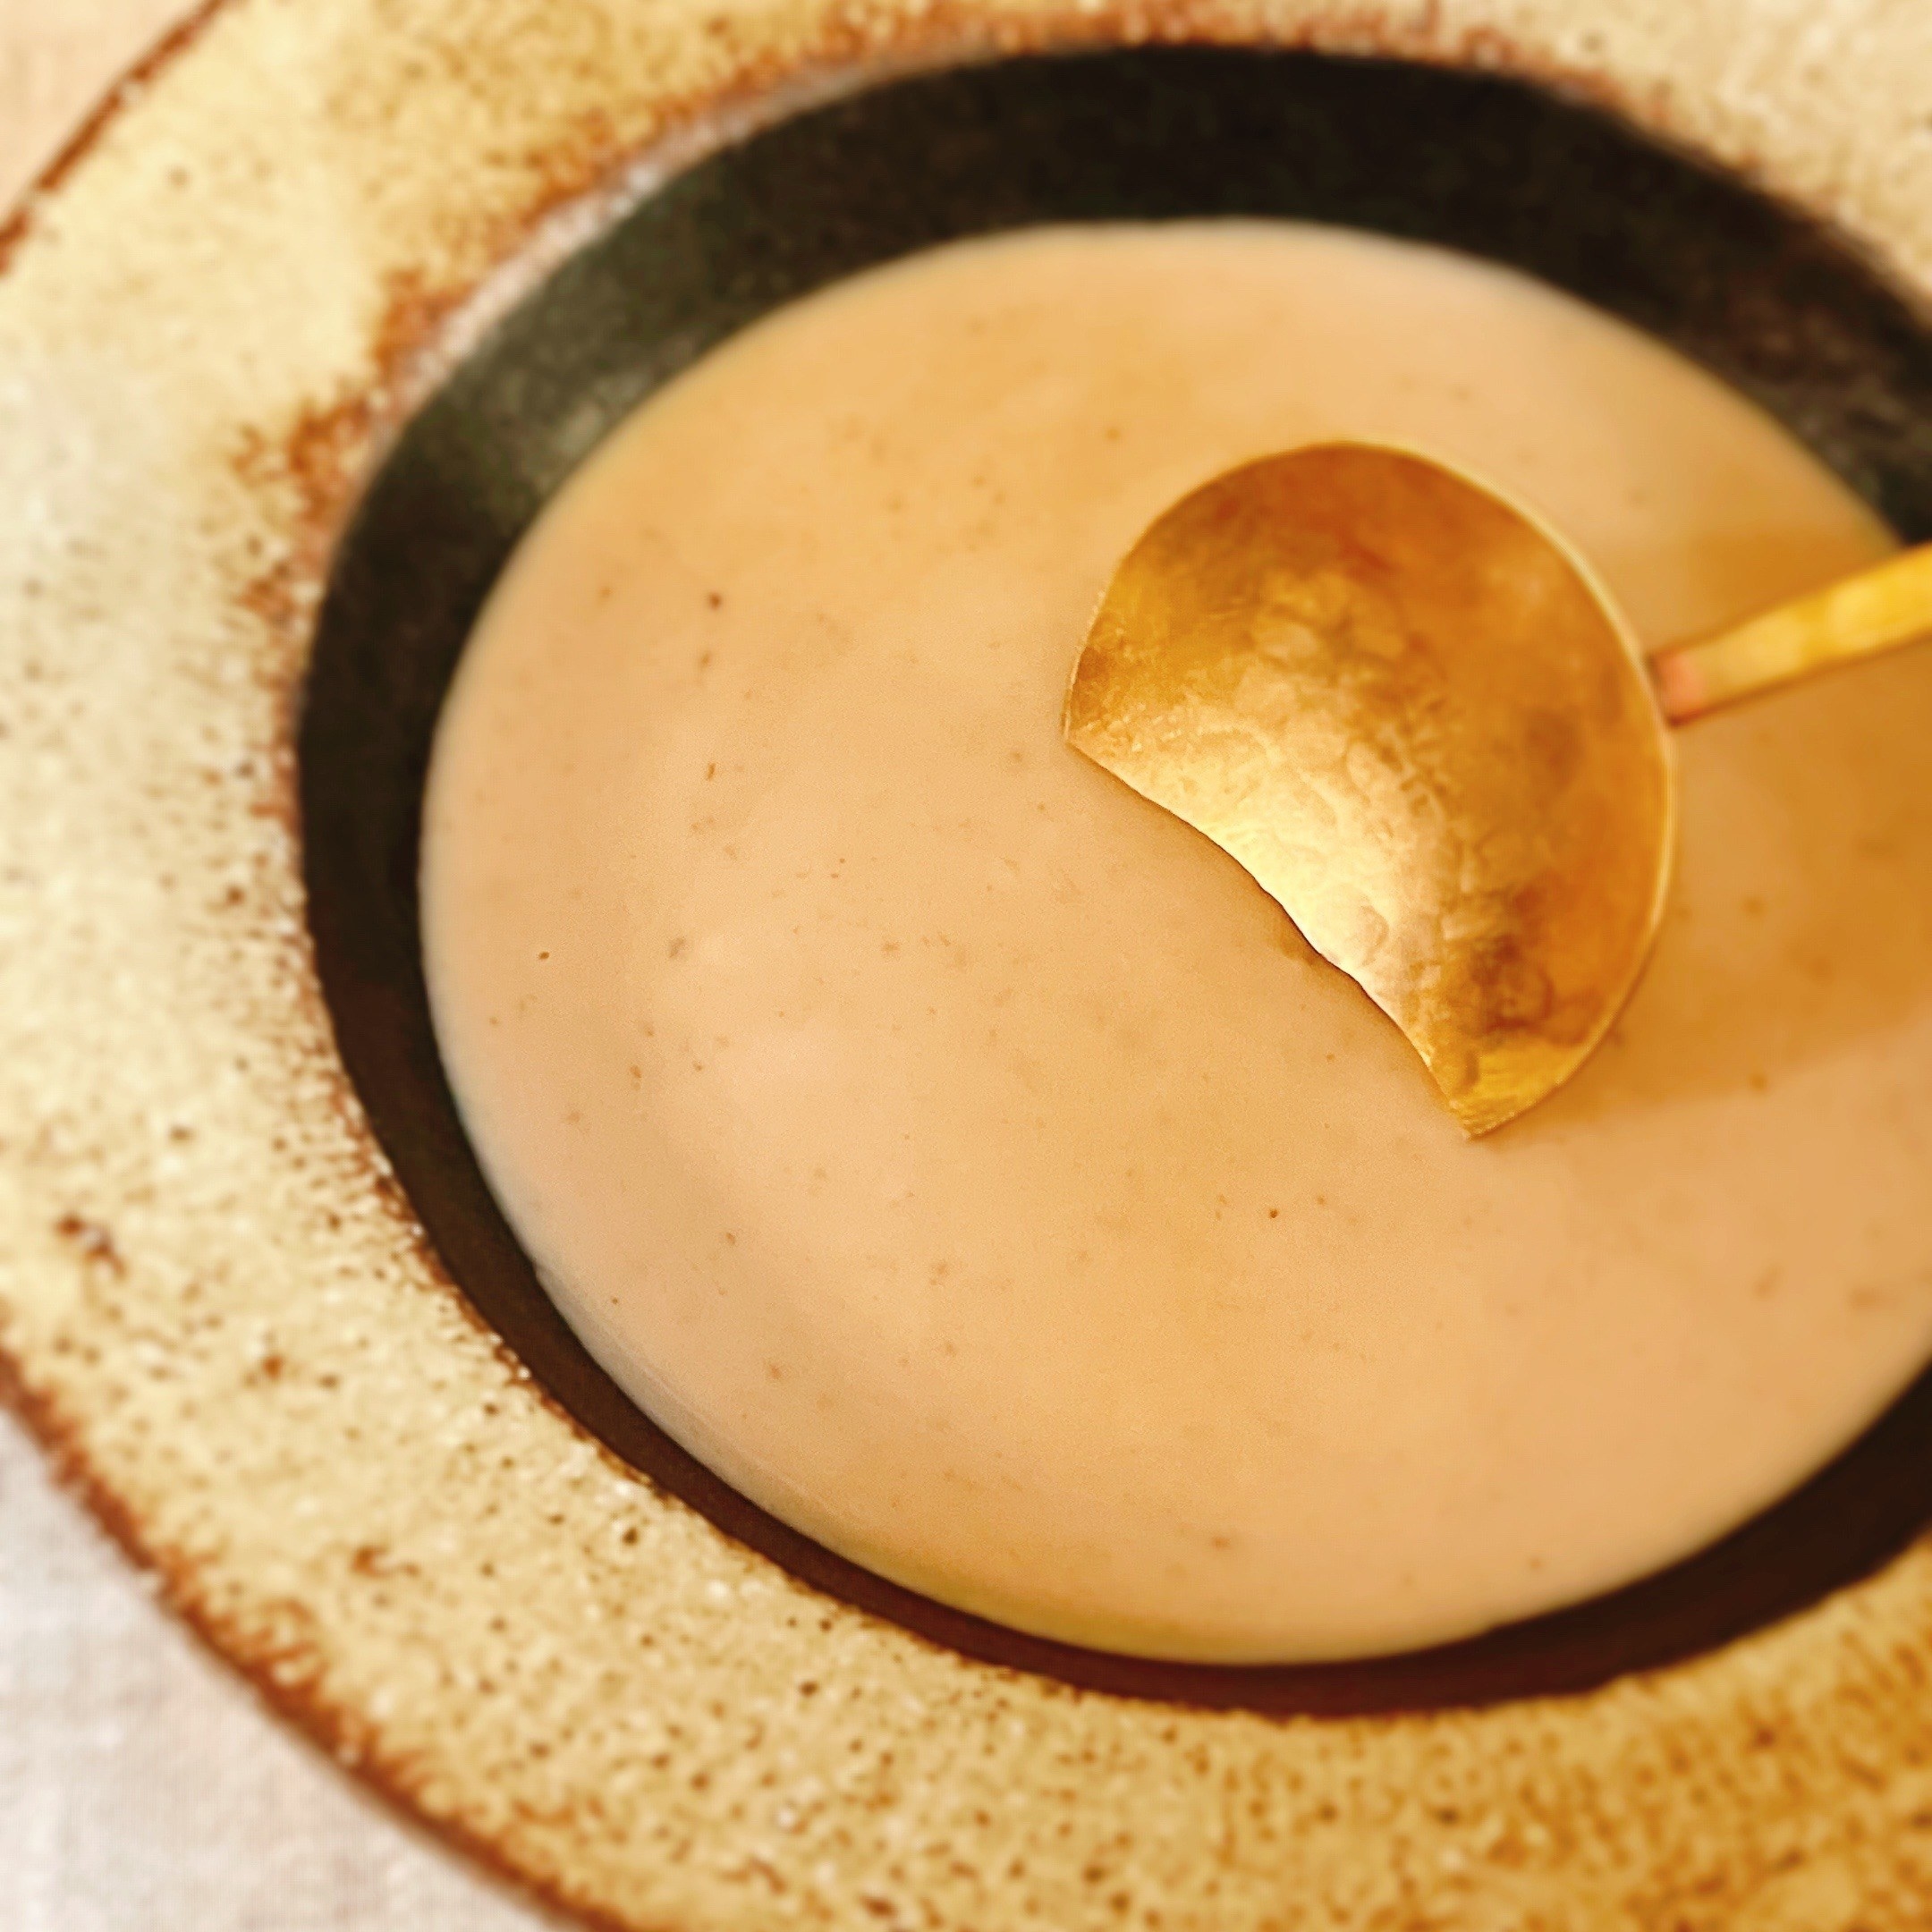 無印良品のオススメのスープ「素材を生かしたスープ ポルチーニクリームのポタージュ」